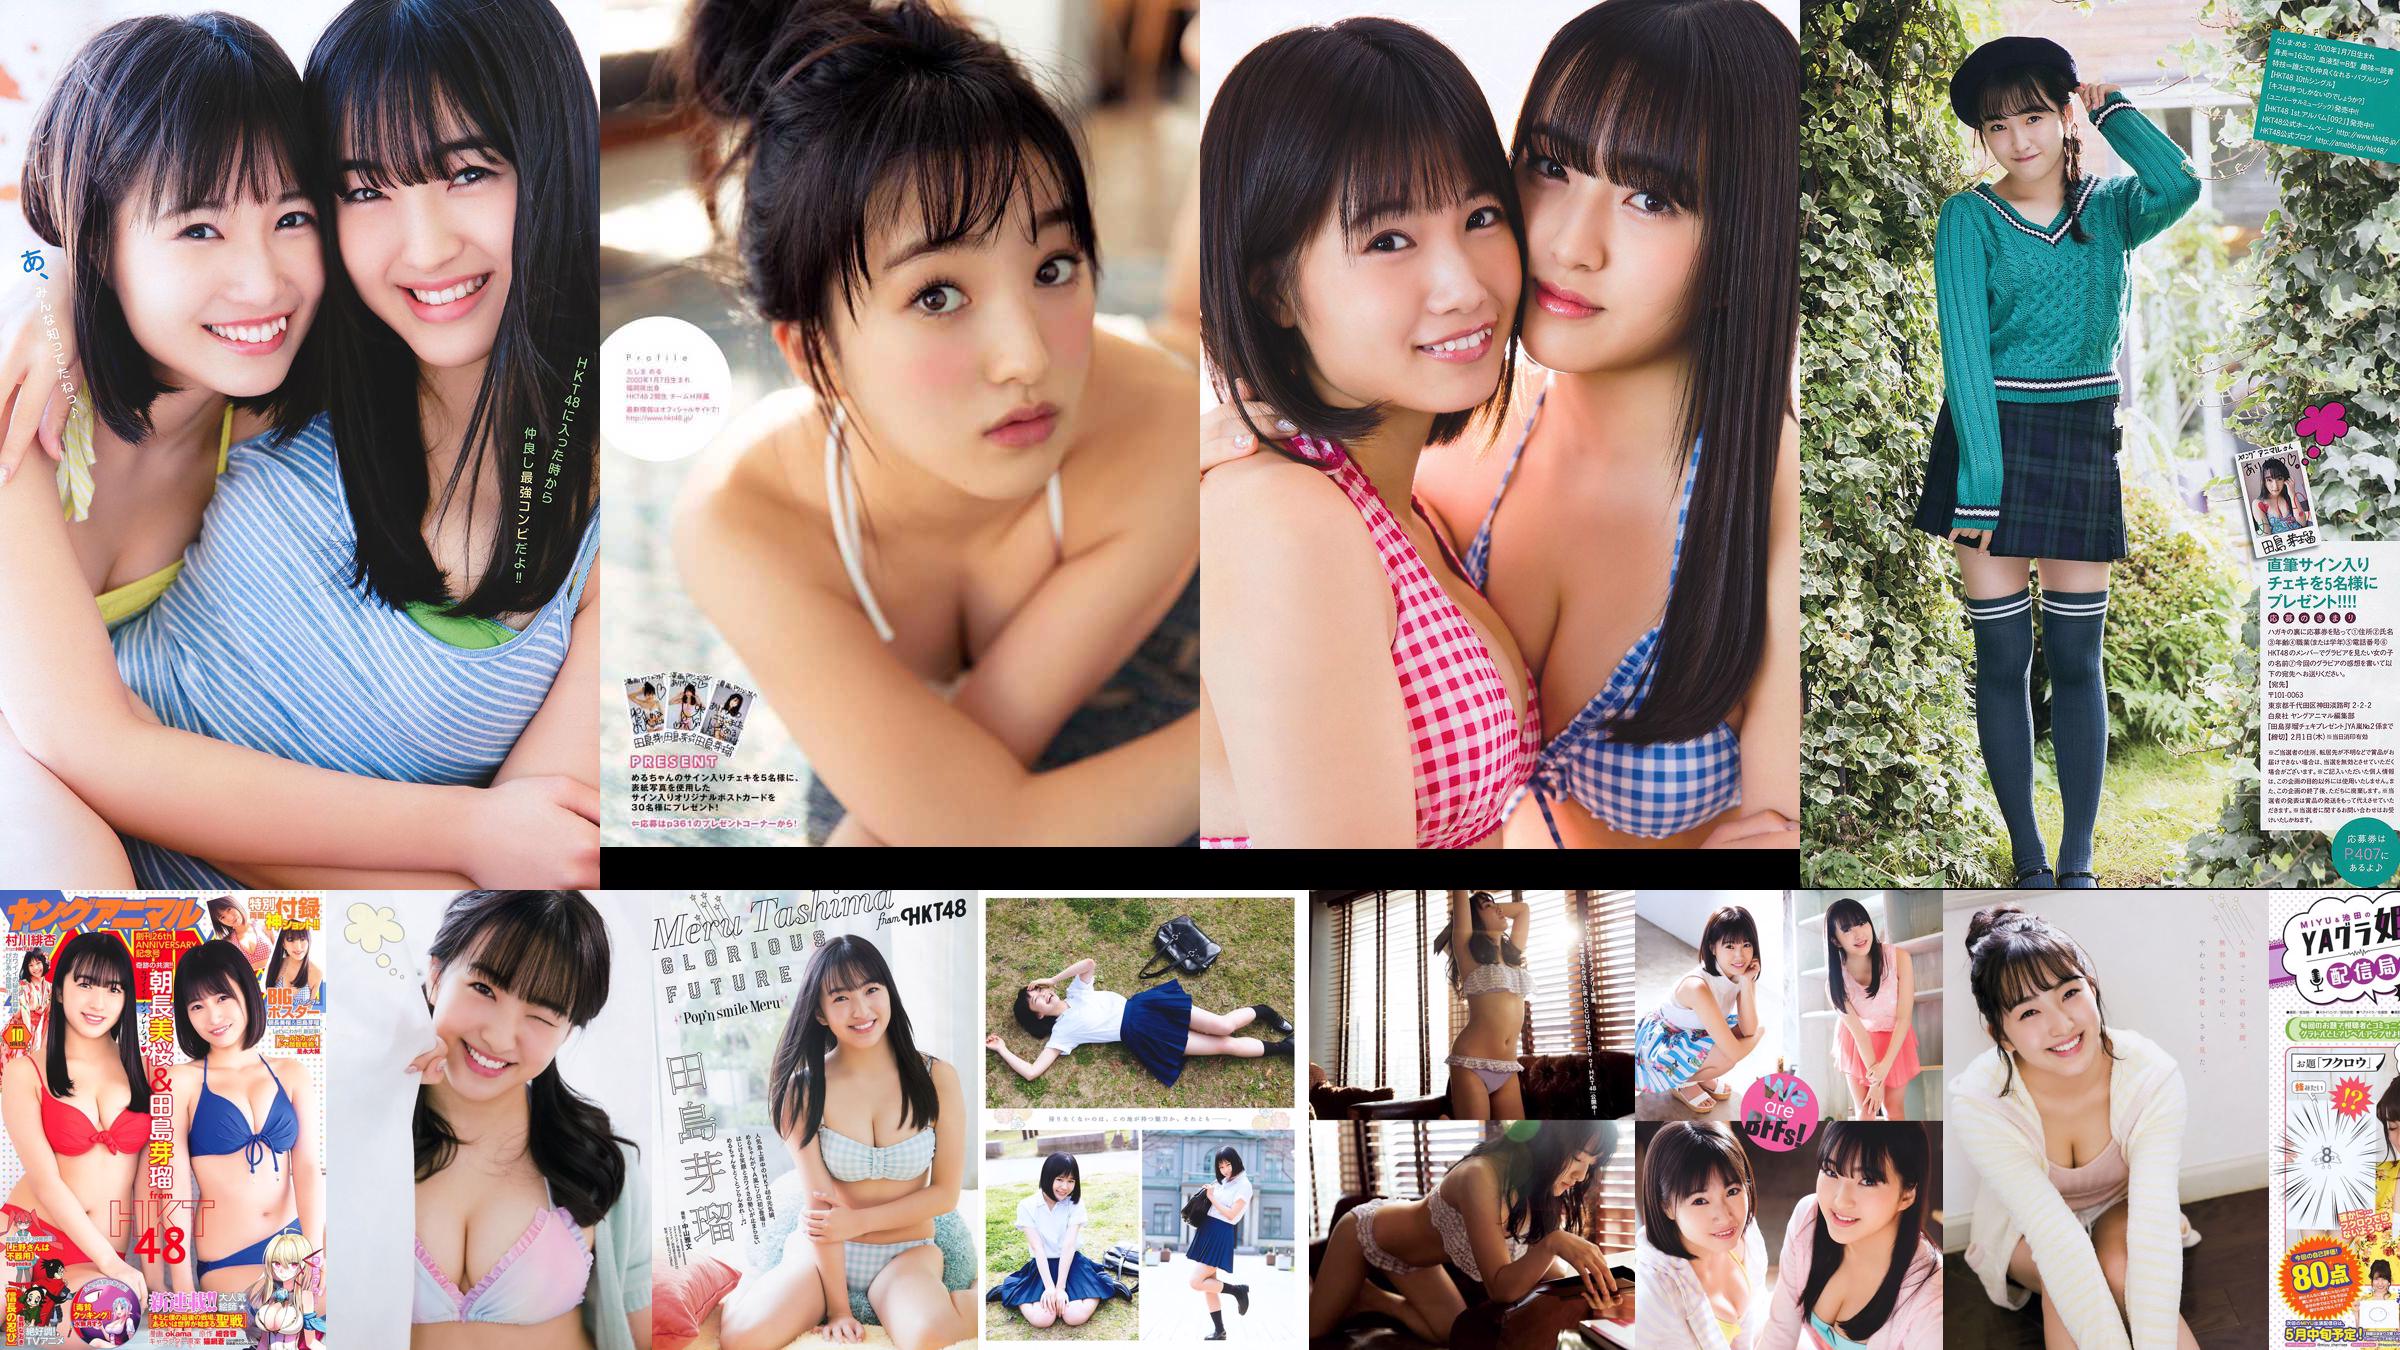 Nana Ayano Yuka Someya [Young Animal Arashi Special Edition] No.06 2015 Fotografía No.89f404 Página 1